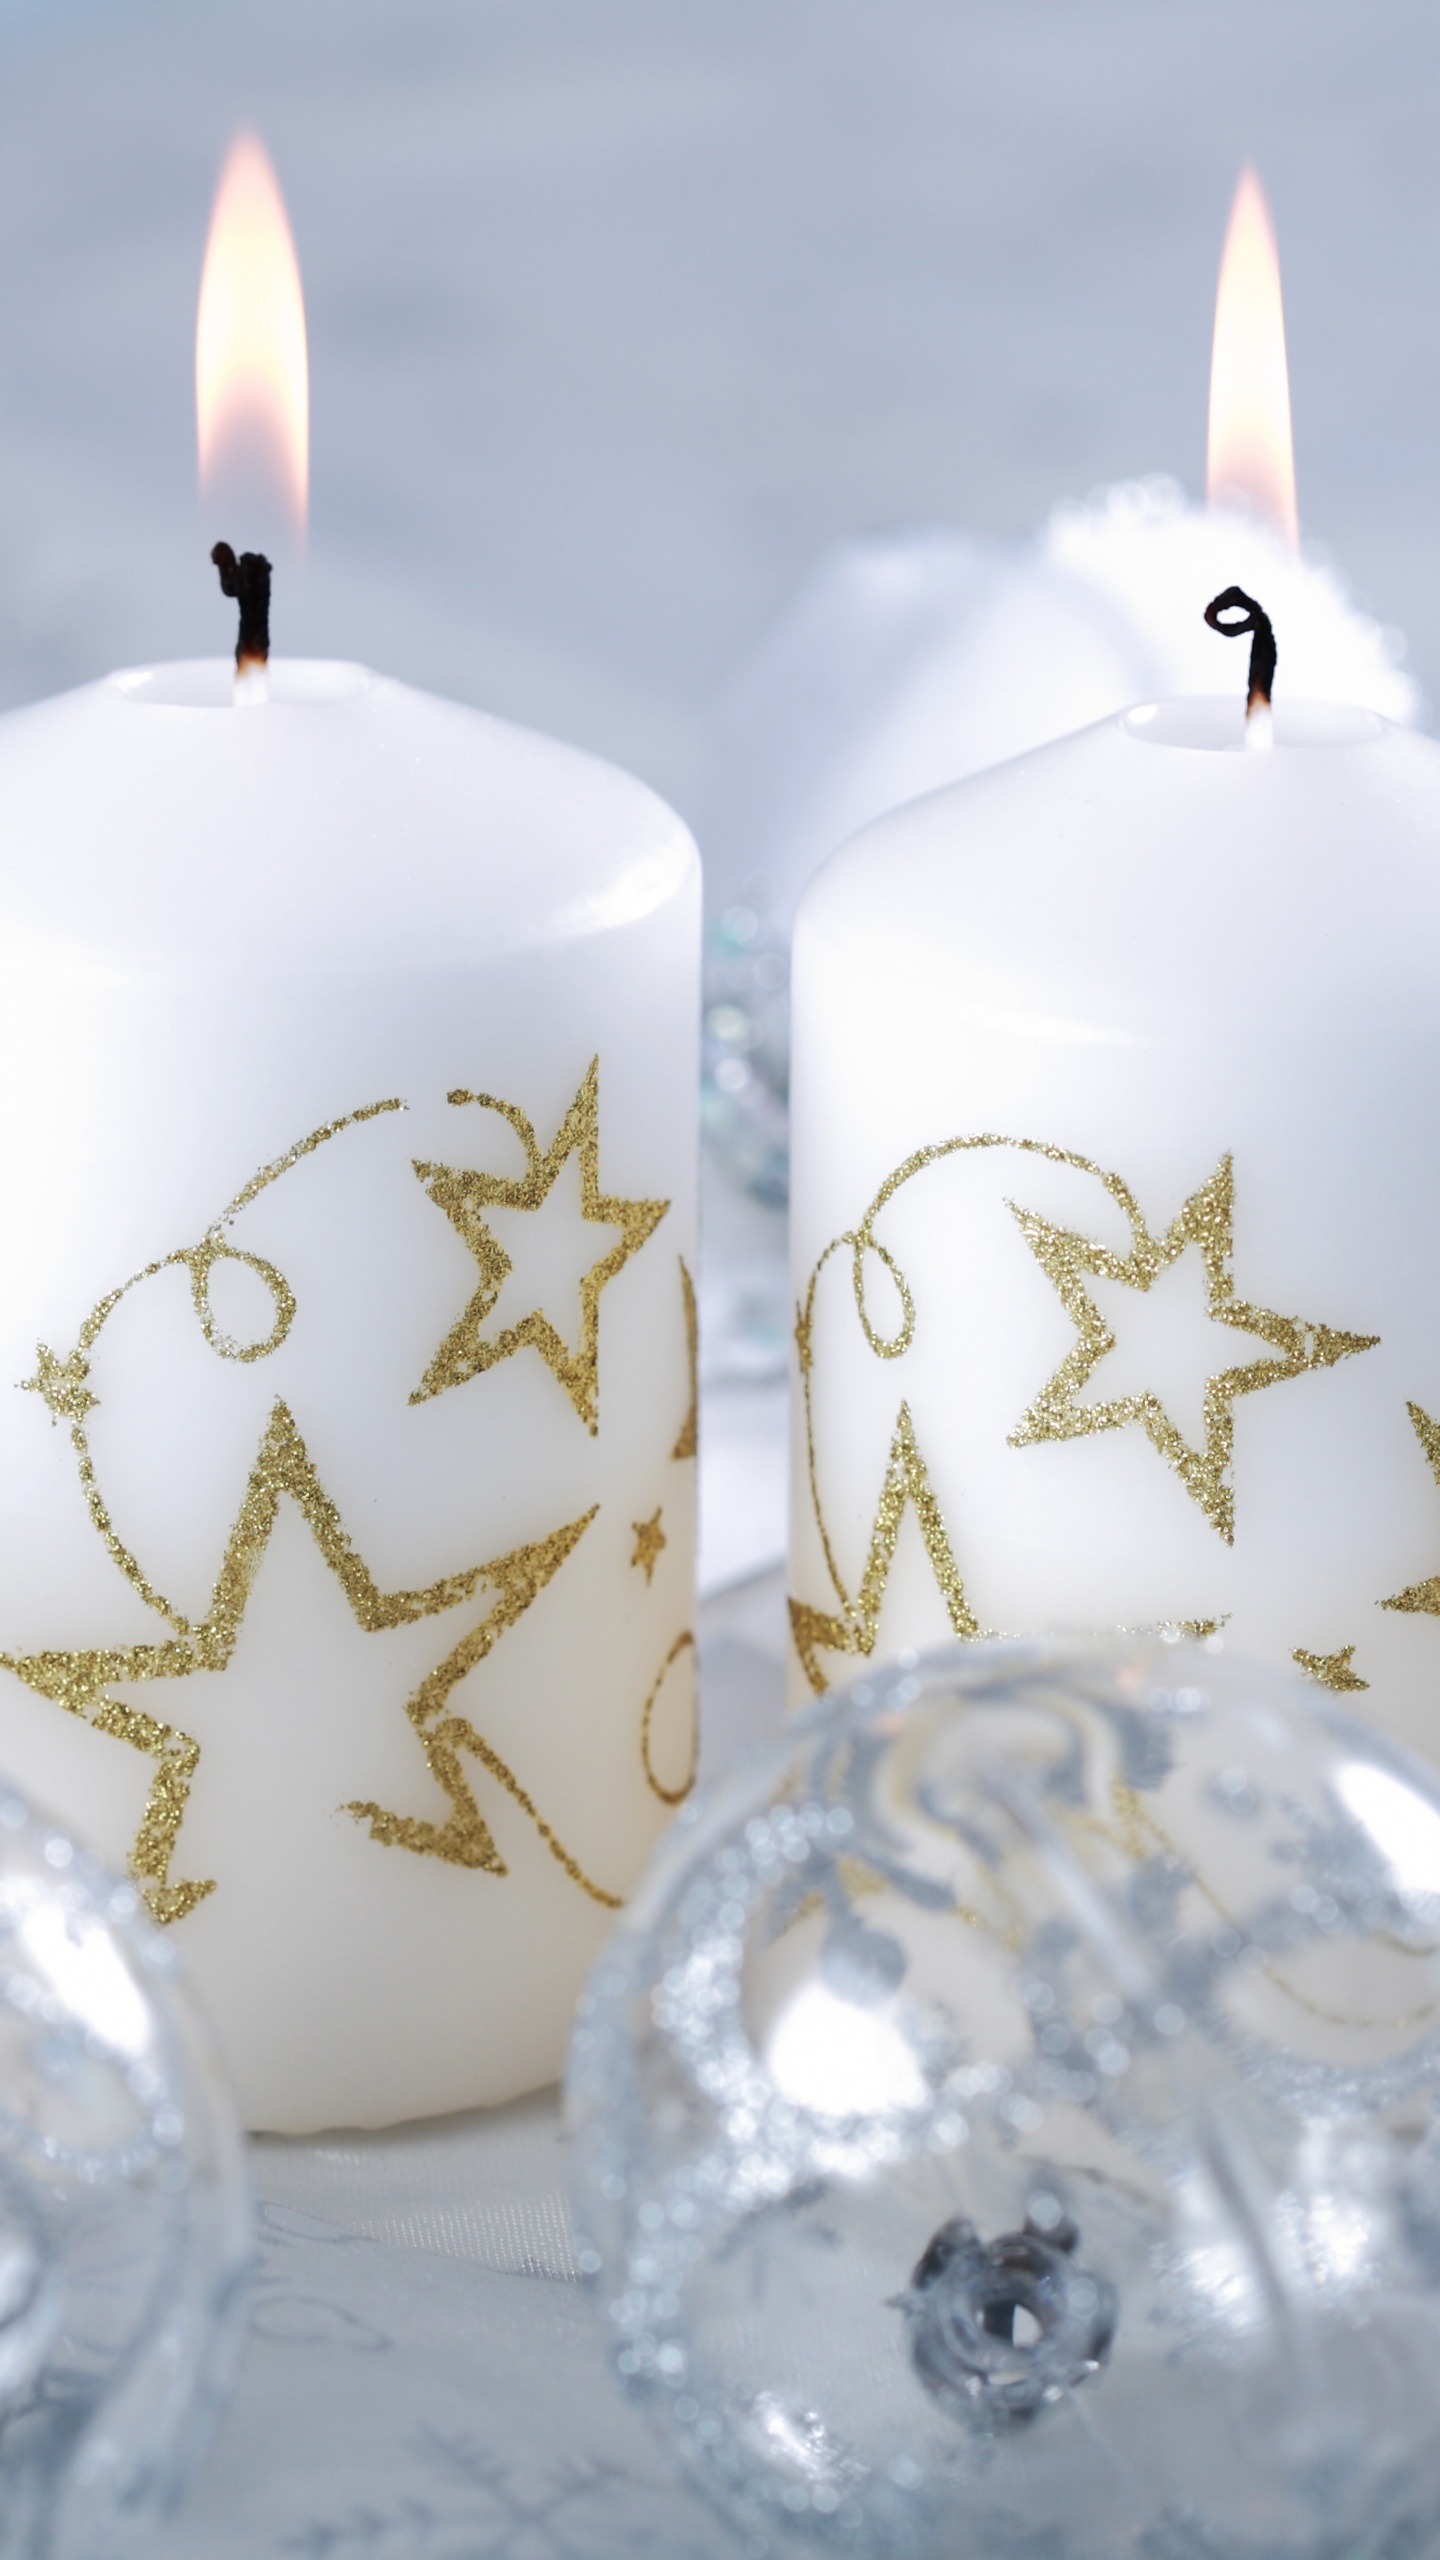 圣诞节那天, 团结蜡烛, 圣诞节的装饰品, 室内设计, 装饰品 壁纸 1440x2560 允许